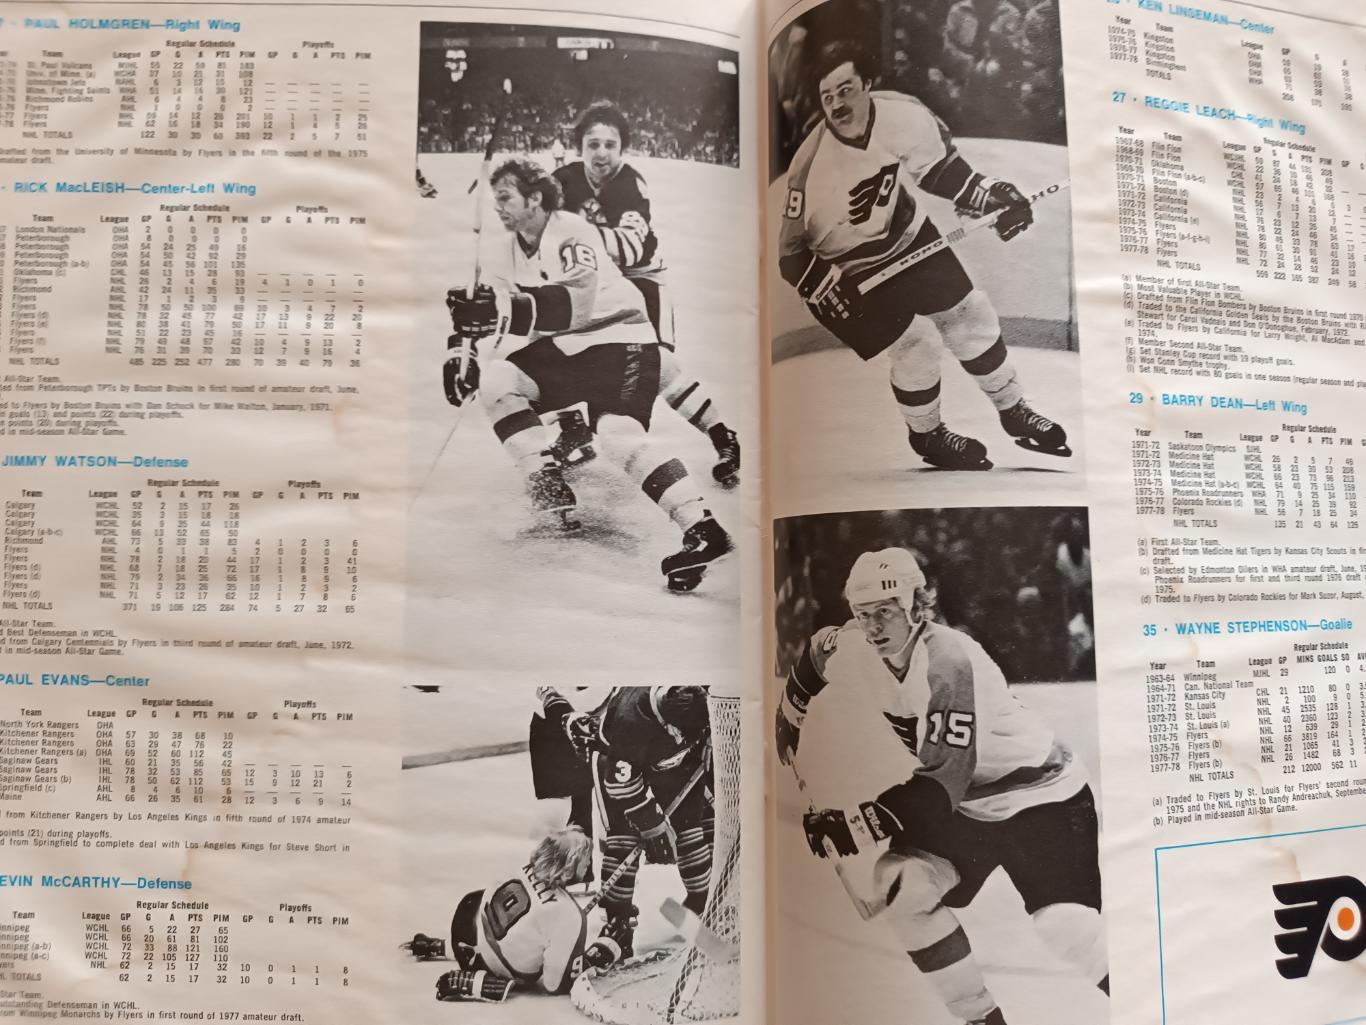 ХОККЕЙ АЛЬБОМ ЕЖЕГОДНИК НХЛ ФИЛАДЕЛЬФИЯ 1978-79 NHL YEARBOOK ALBOM PHILADELPHIA 7